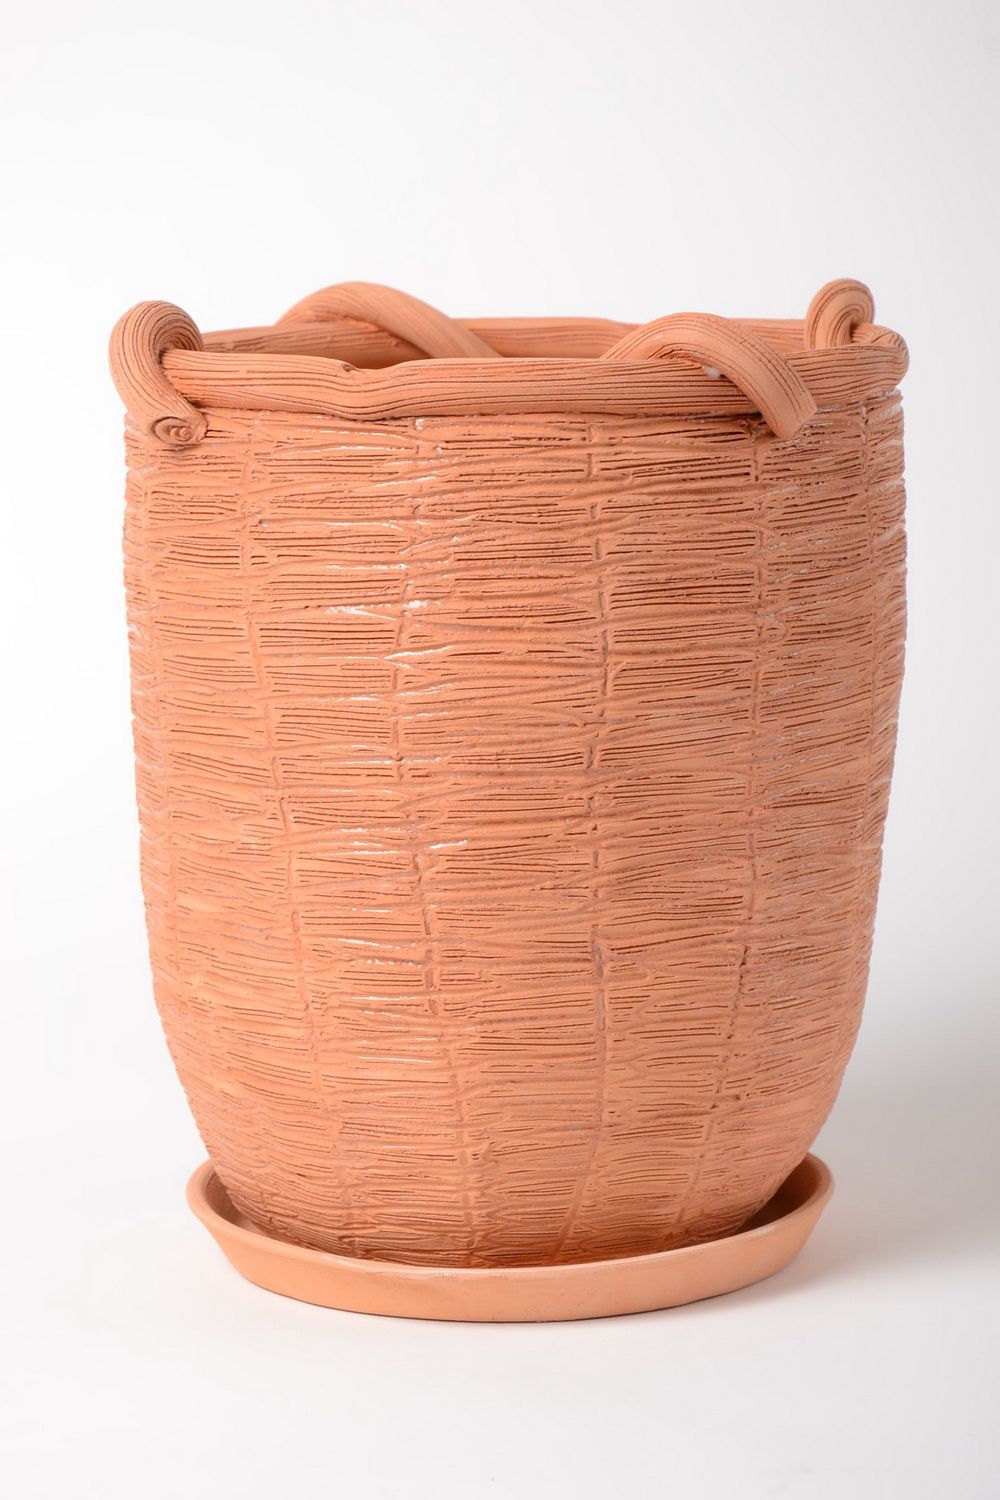 Haut pot de fleurs en céramique 2.5 litres fait main décoration maison photo 2